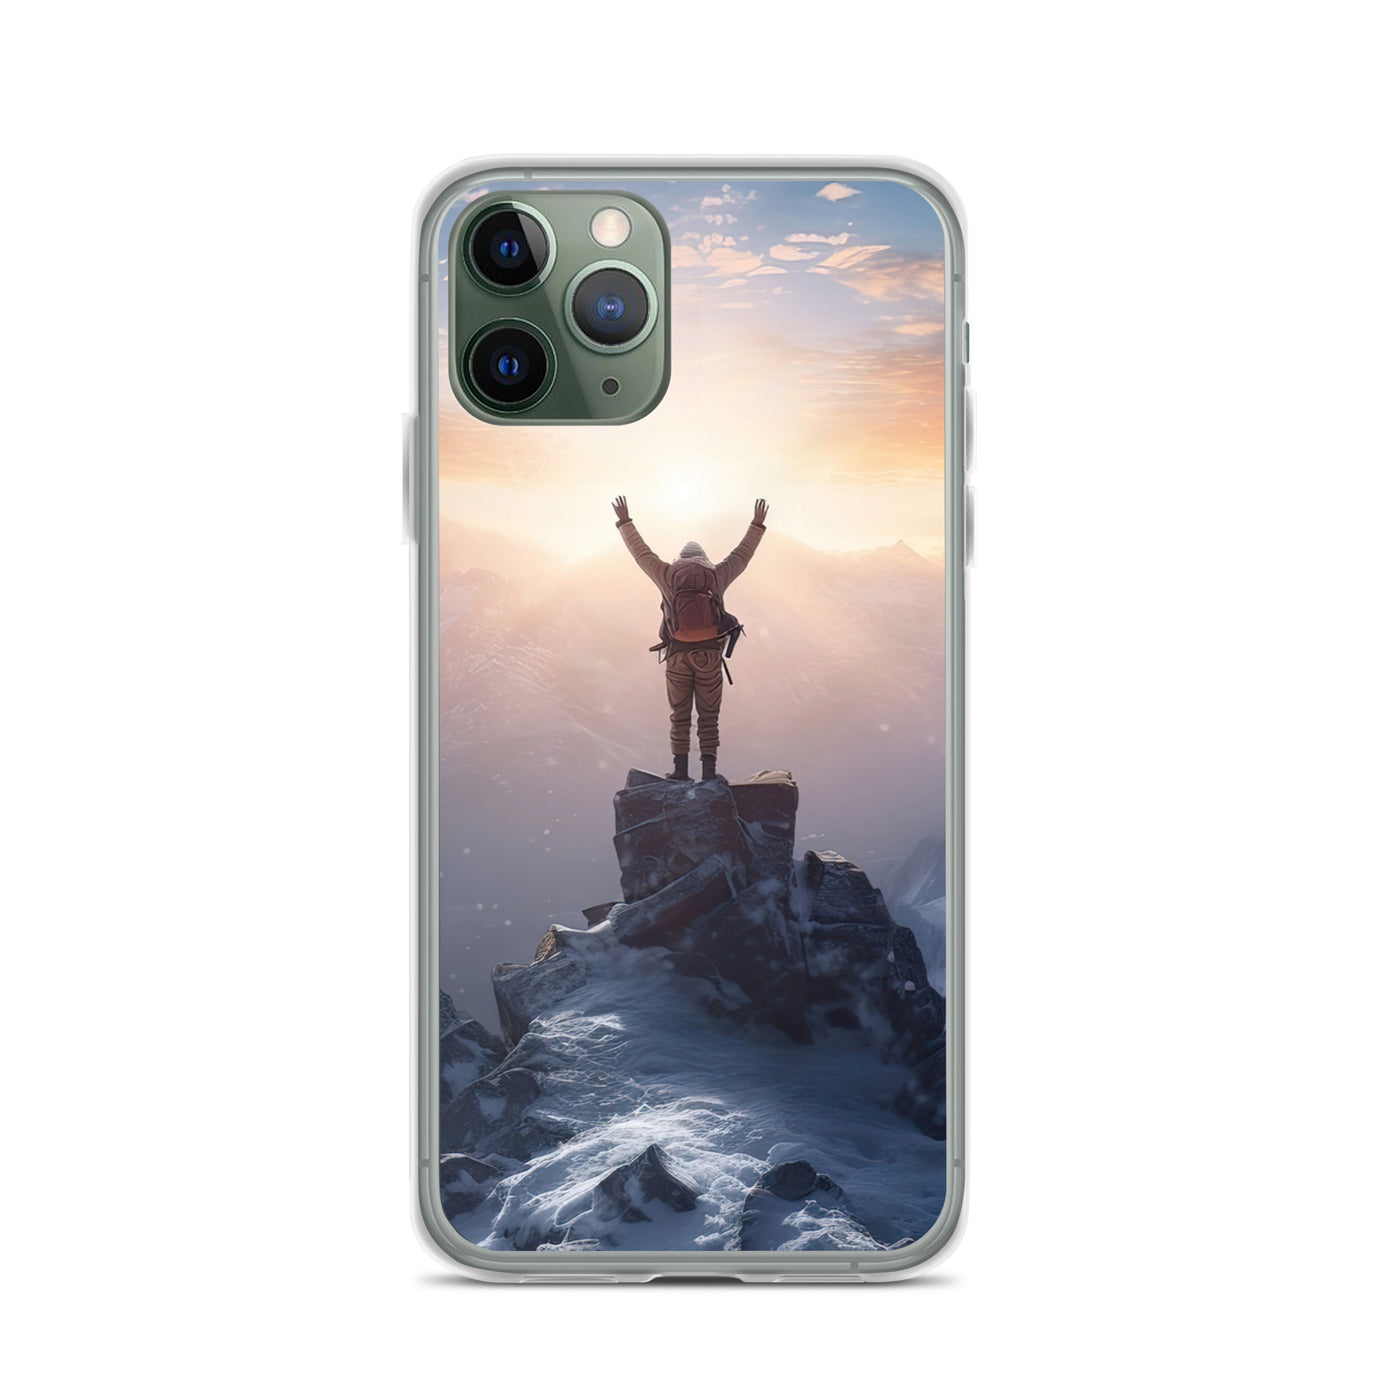 Mann auf der Spitze eines Berges - Landschaftsmalerei - iPhone Schutzhülle (durchsichtig) berge xxx iPhone 11 Pro